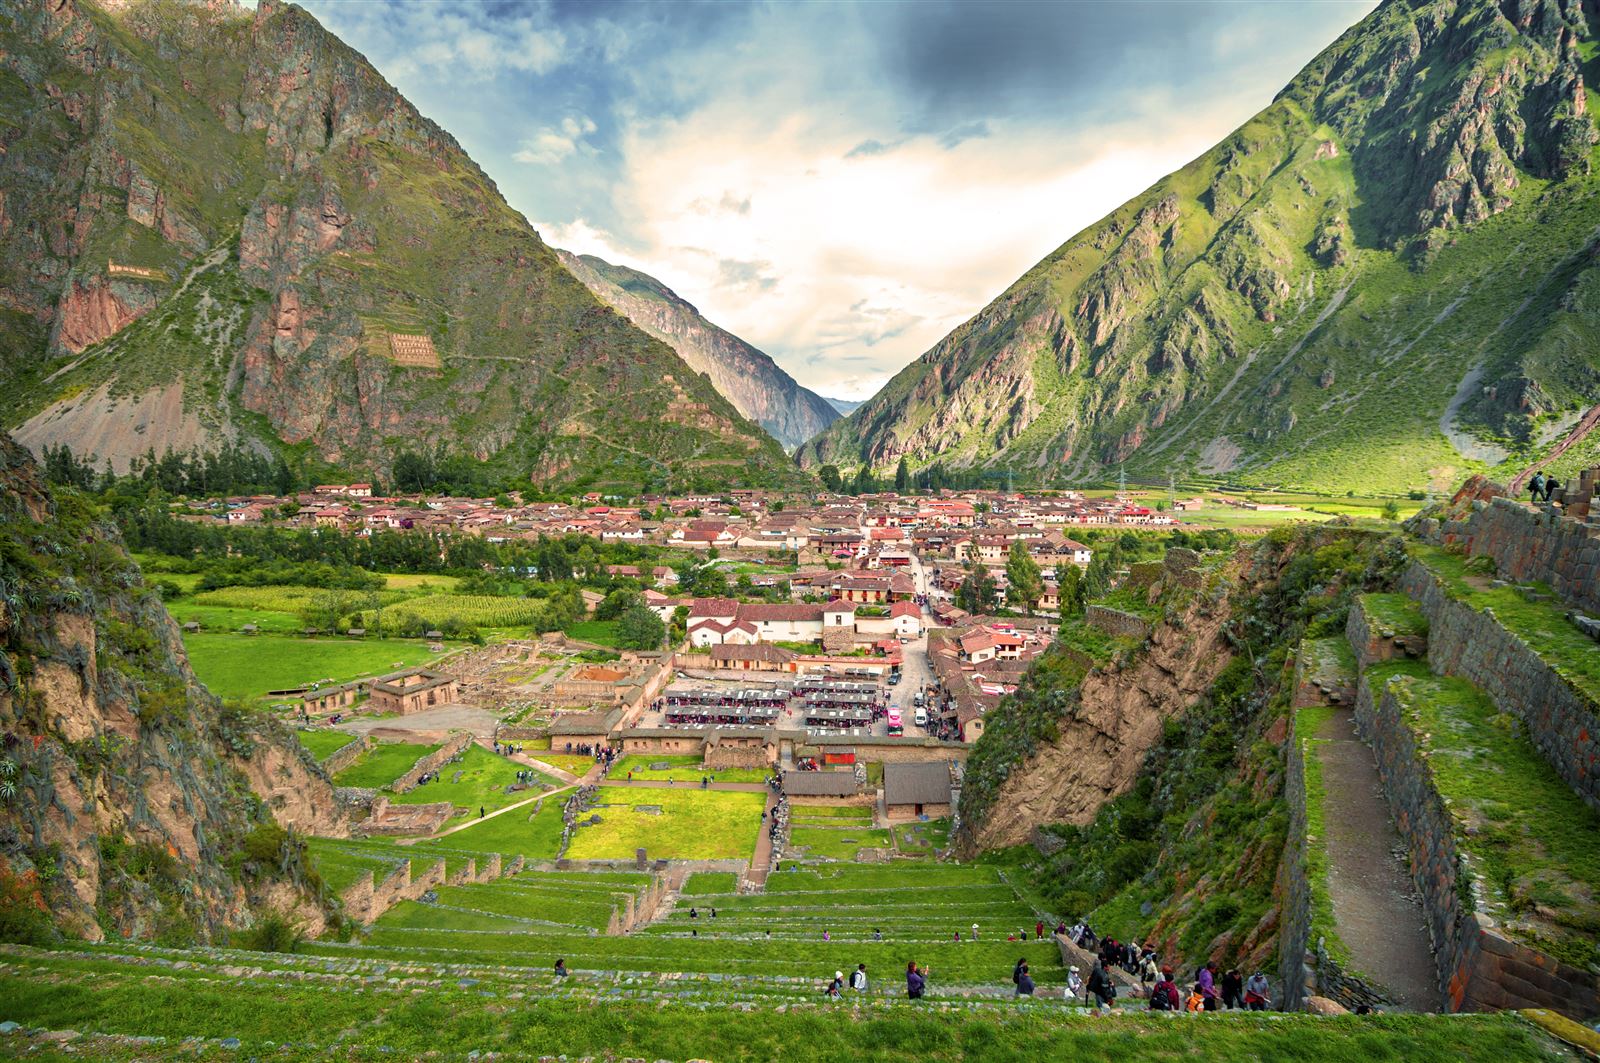 Heiliges Tal mit alter Inkafestung